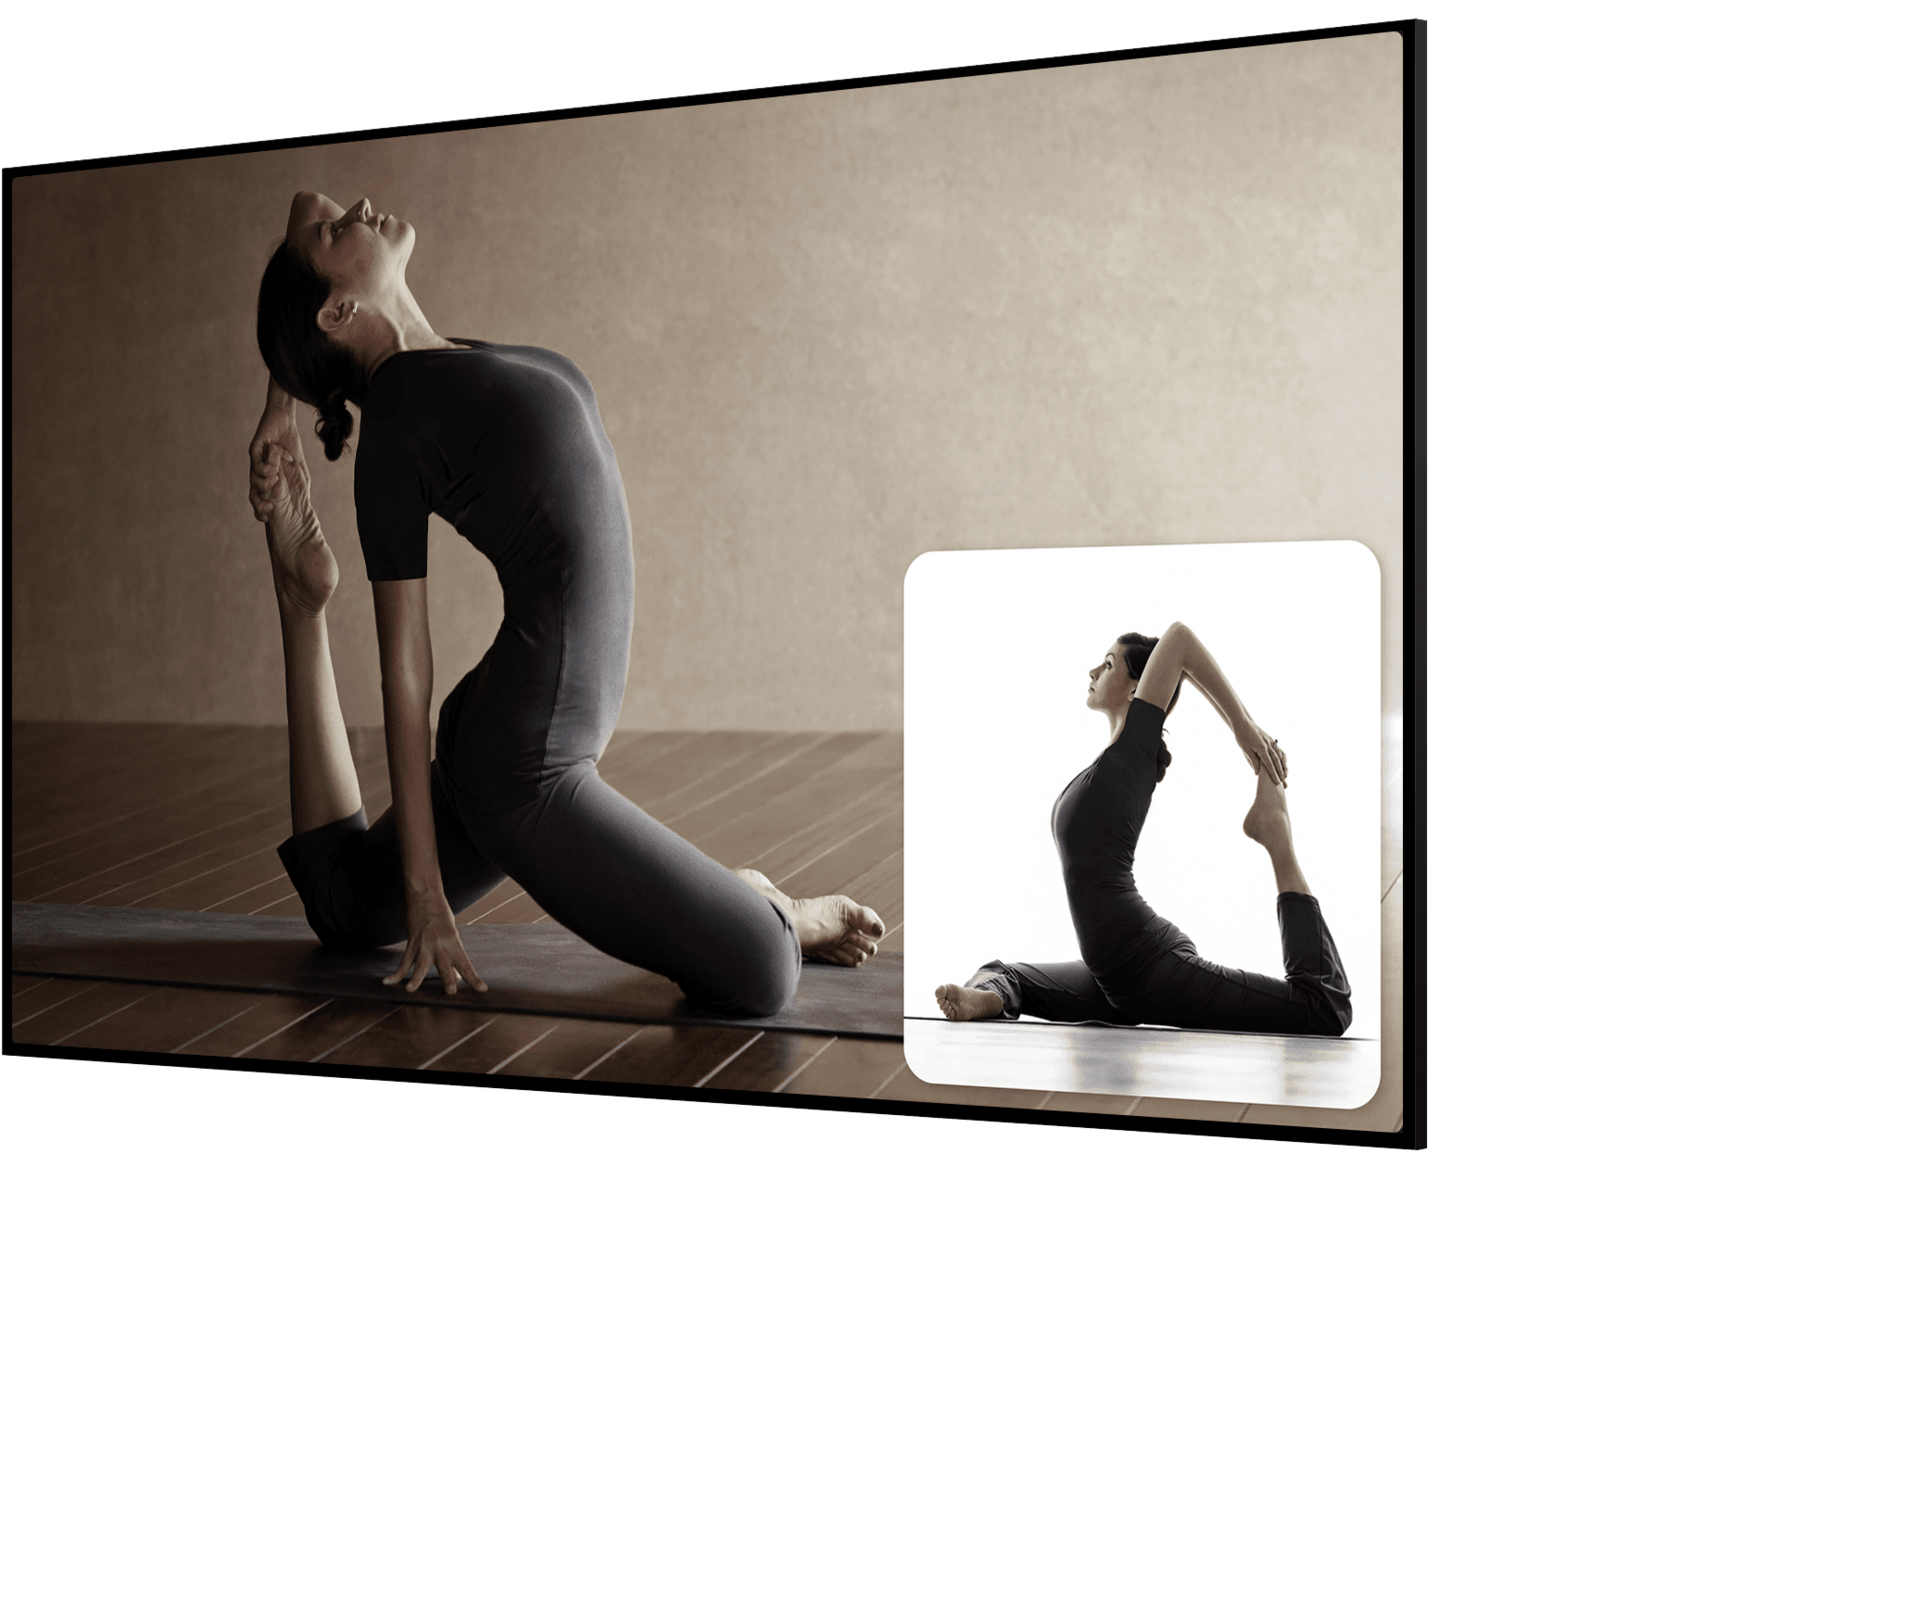 Ein TV zeigt auf dem Bildschirm ein Video, in dem eine Yogalehrerin eine Yogaposition vorführt. Ein kleines Quadrat in der Ecke des Bildschirms spiegelt das Bild der Smartphone-Kamera, in dem eine Frau den Bewegungen folgt. 